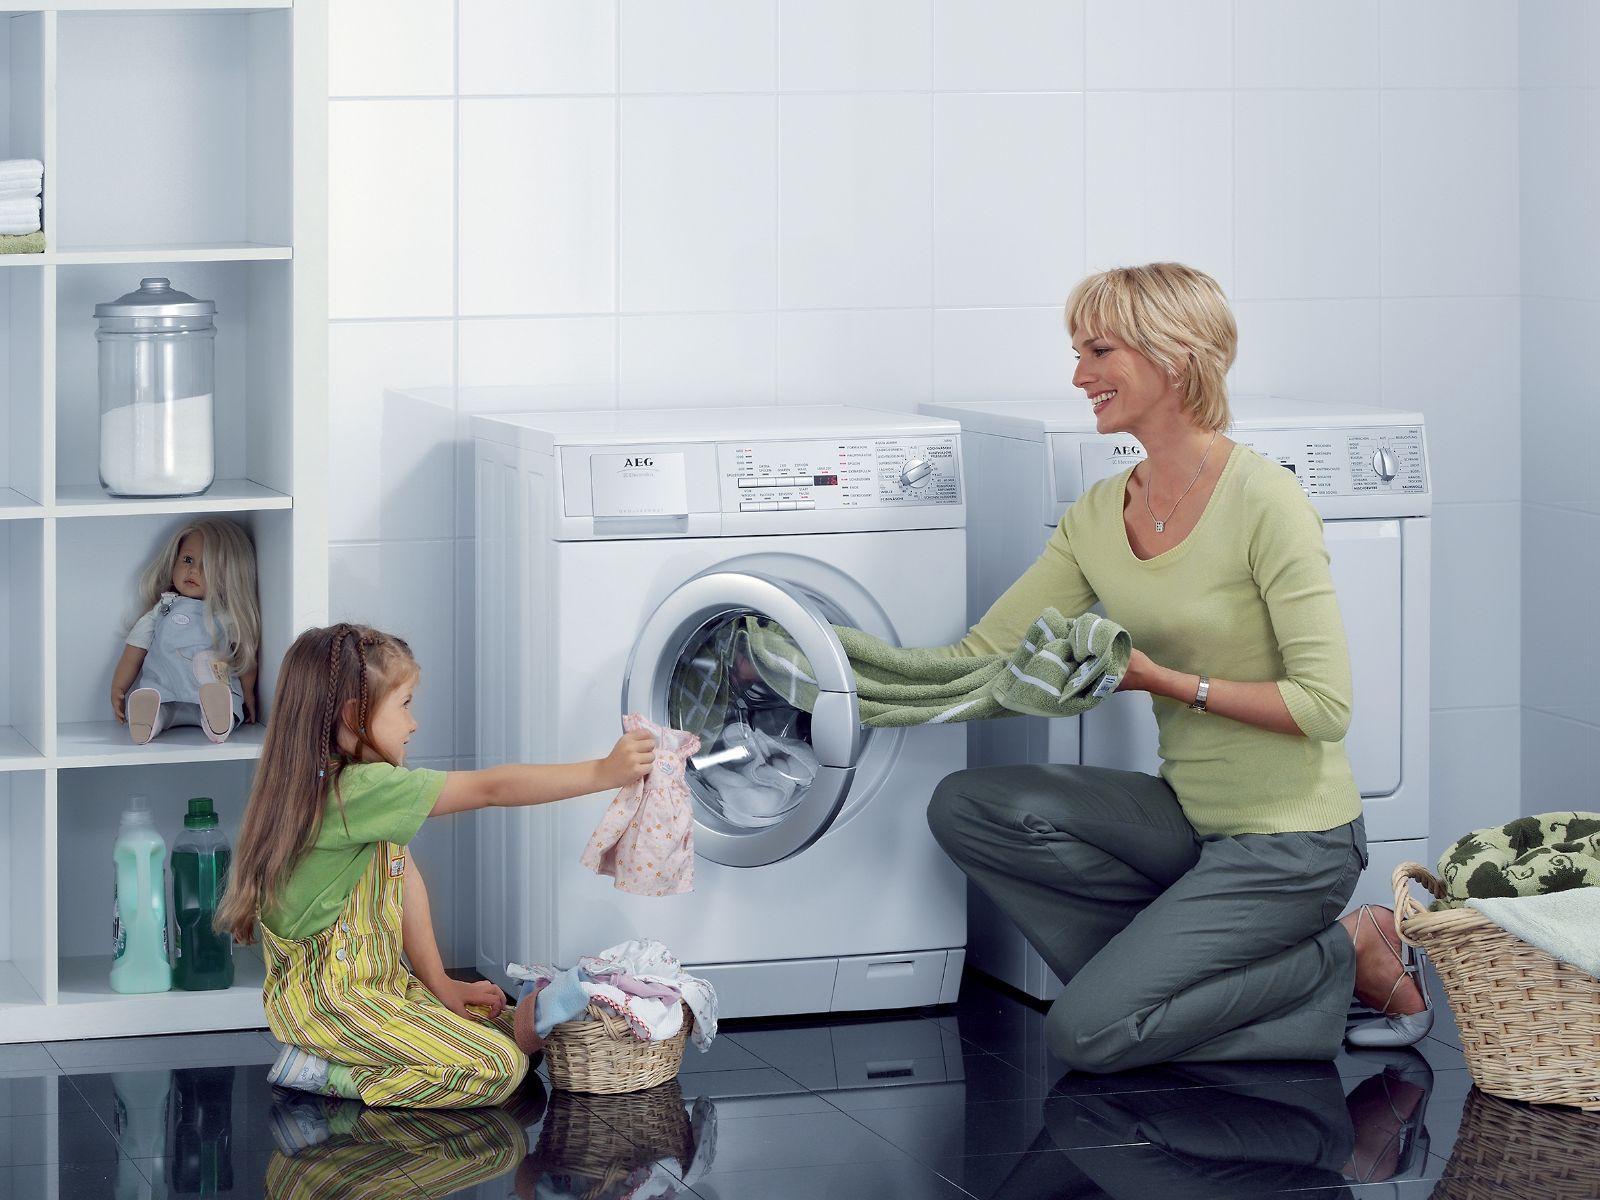 Làm thế nào để sử dụng máy giặt hiệu quả